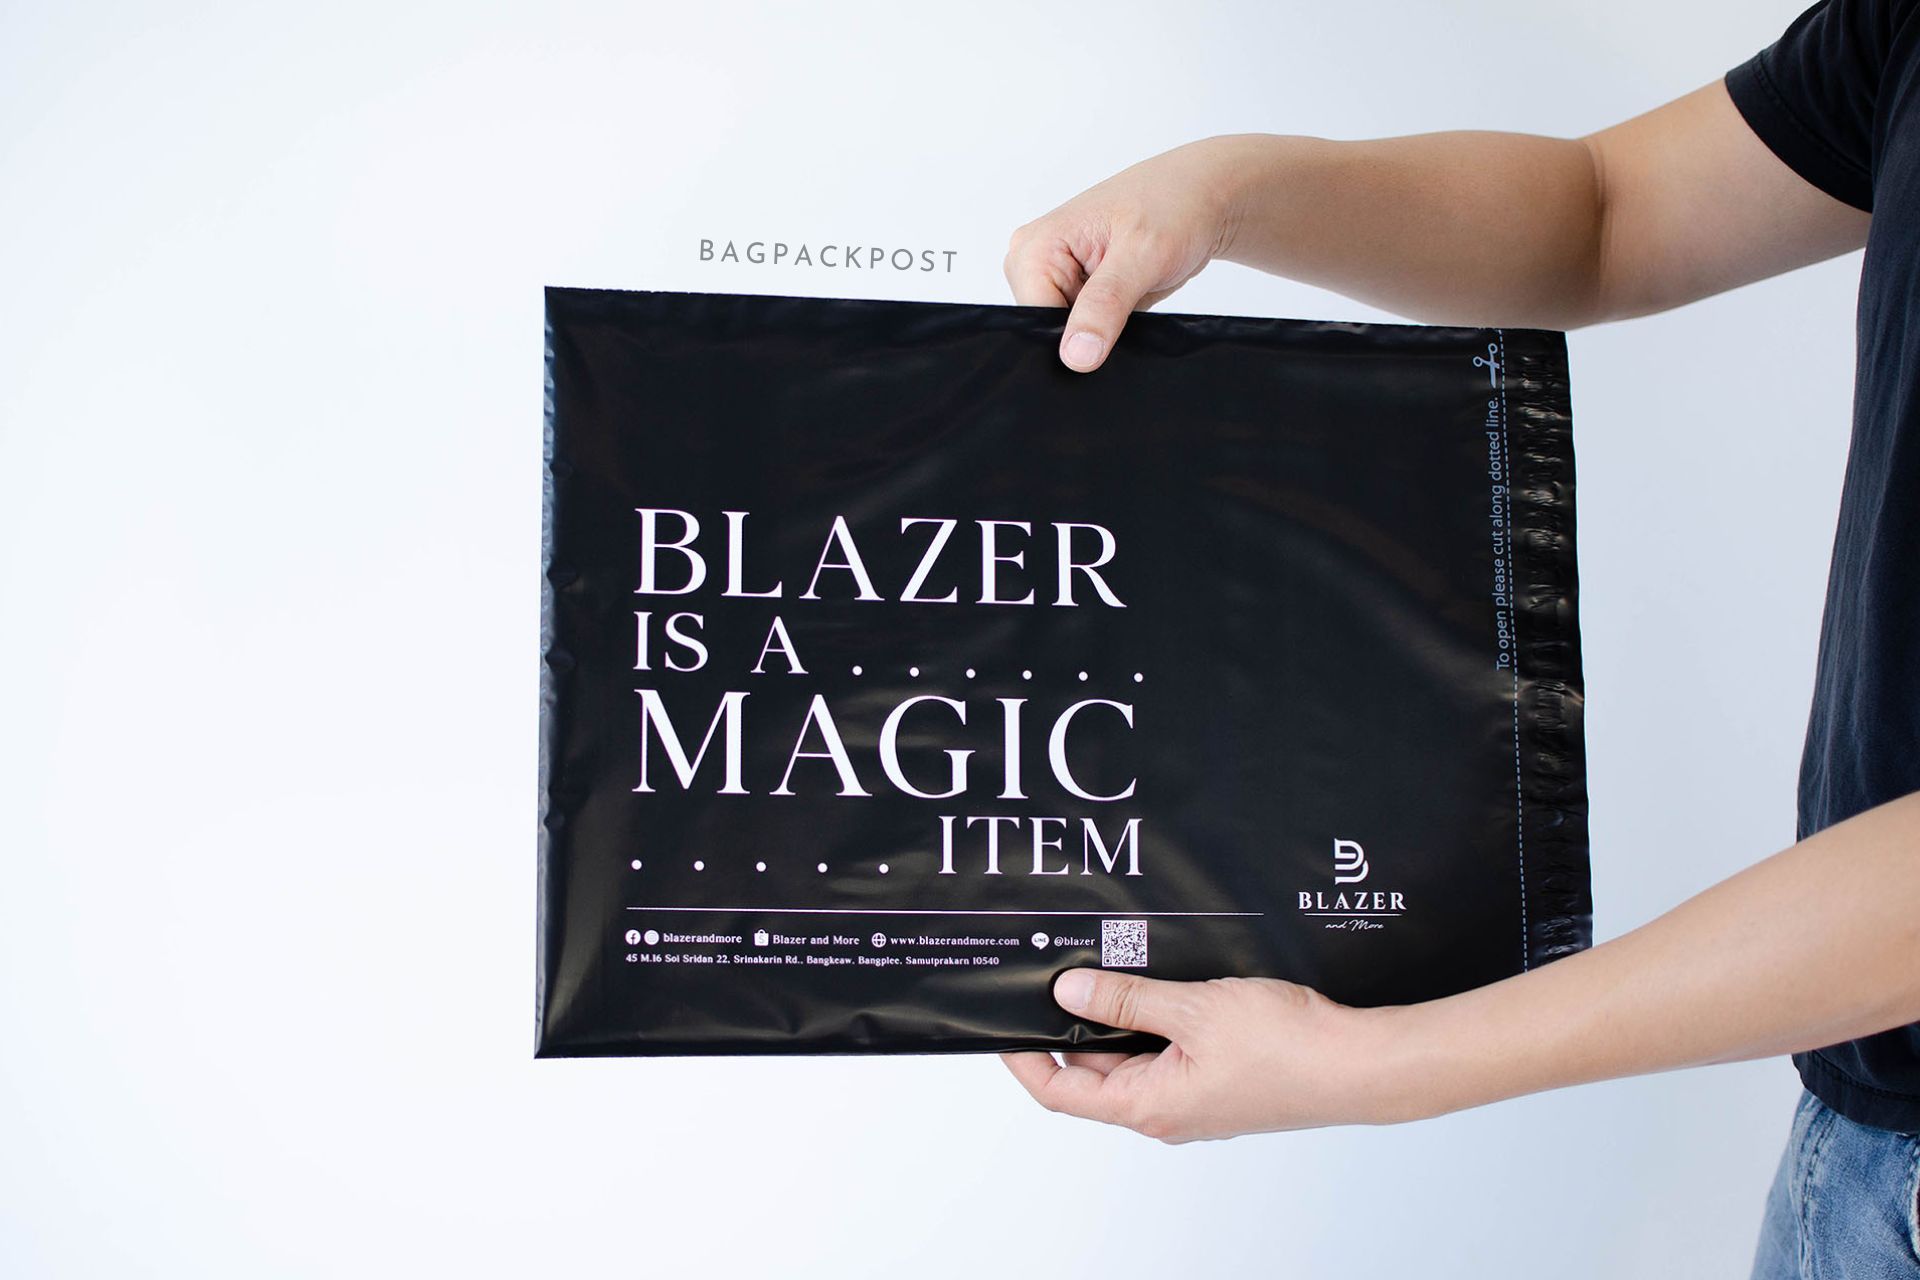 ผลิตถุงไปรษณีย์ ซองไปรษณีย์พิมพ์ลาย Blazer and More ซองไปรษณีย์สีดำ ถุงไปรษณีย์พิมพ์ลาย 1 BagPackPost